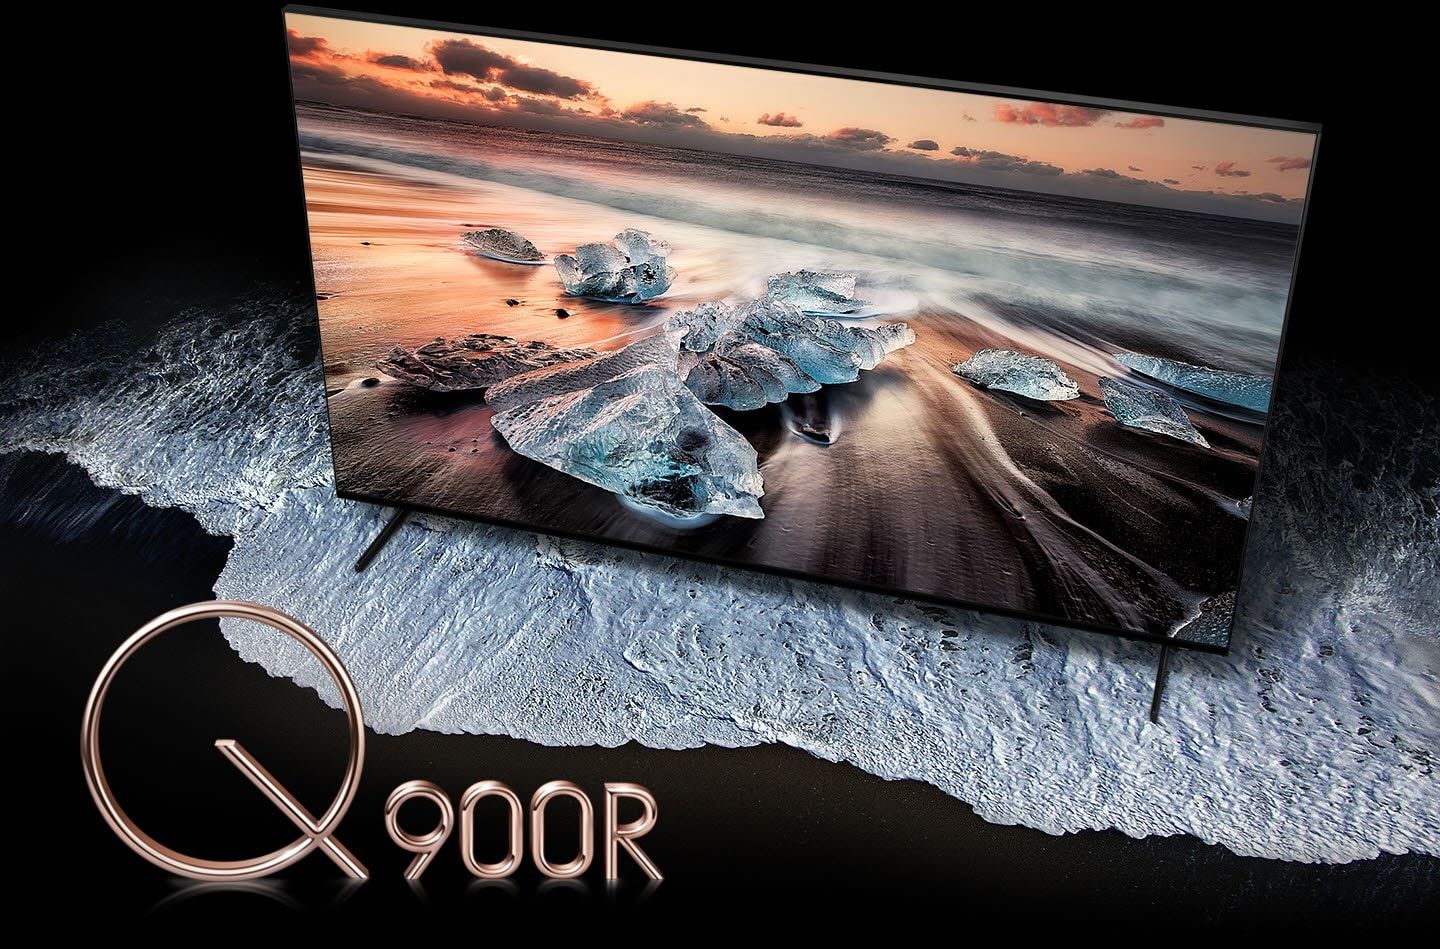 La haute résolution du téléviseur Samsung Q900R.